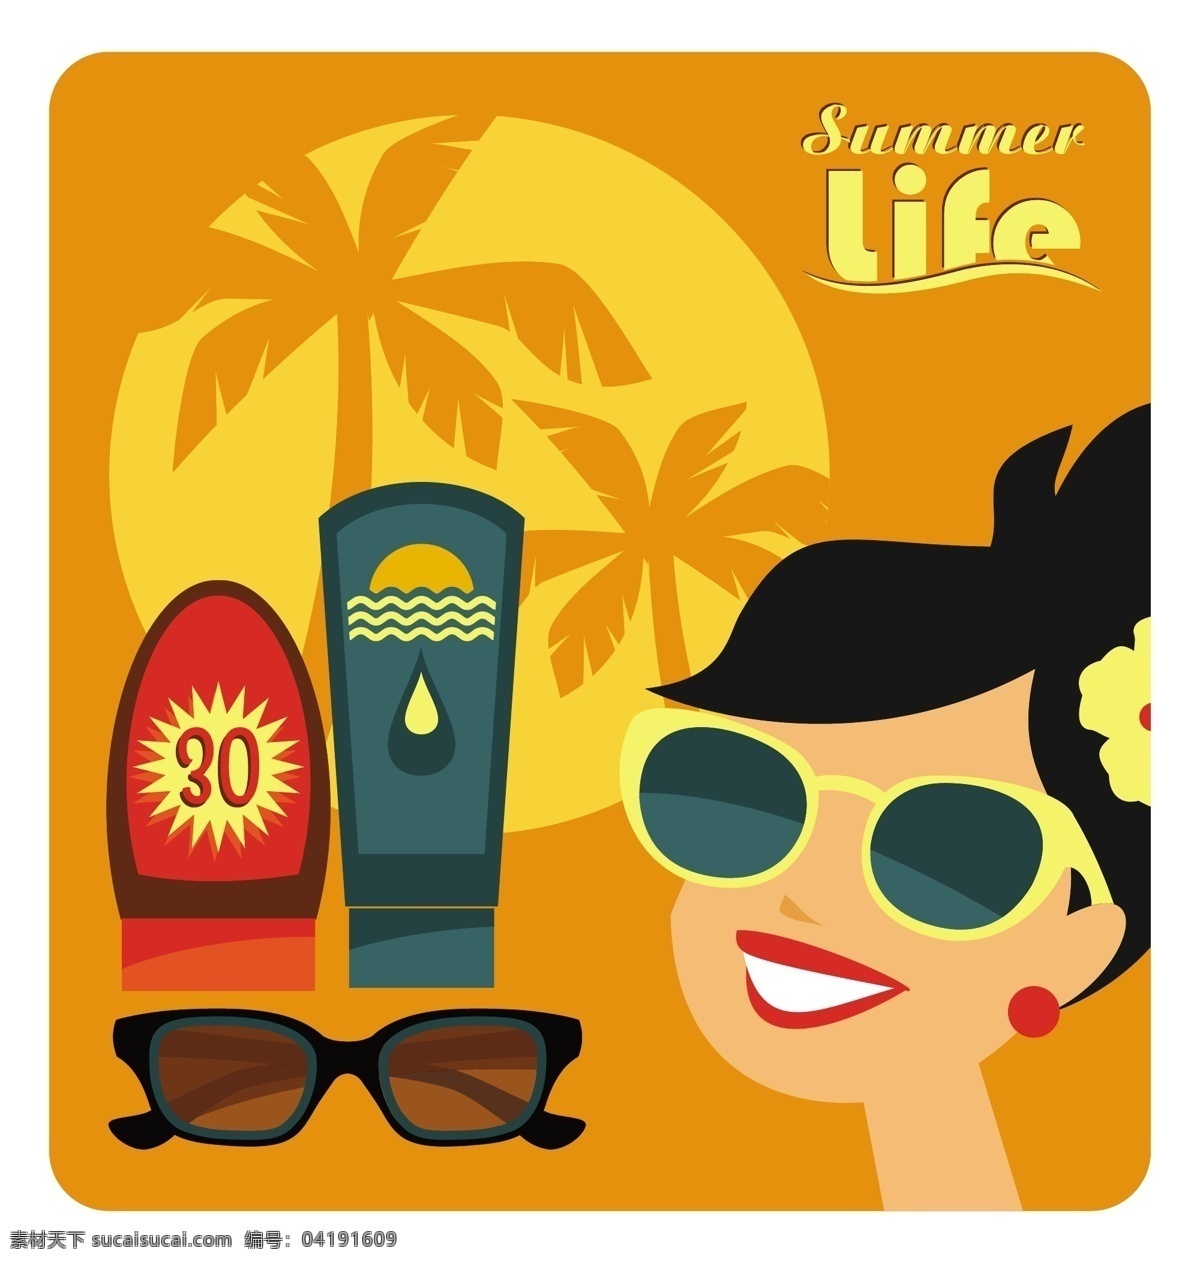 暑假生活插画 夏天 阳光 沙滩 平坦 太阳镜 棕榈 生活 插图 夏日海滩 温暖的 垂直的 防晒霜 神圣的日子 日光浴 白色